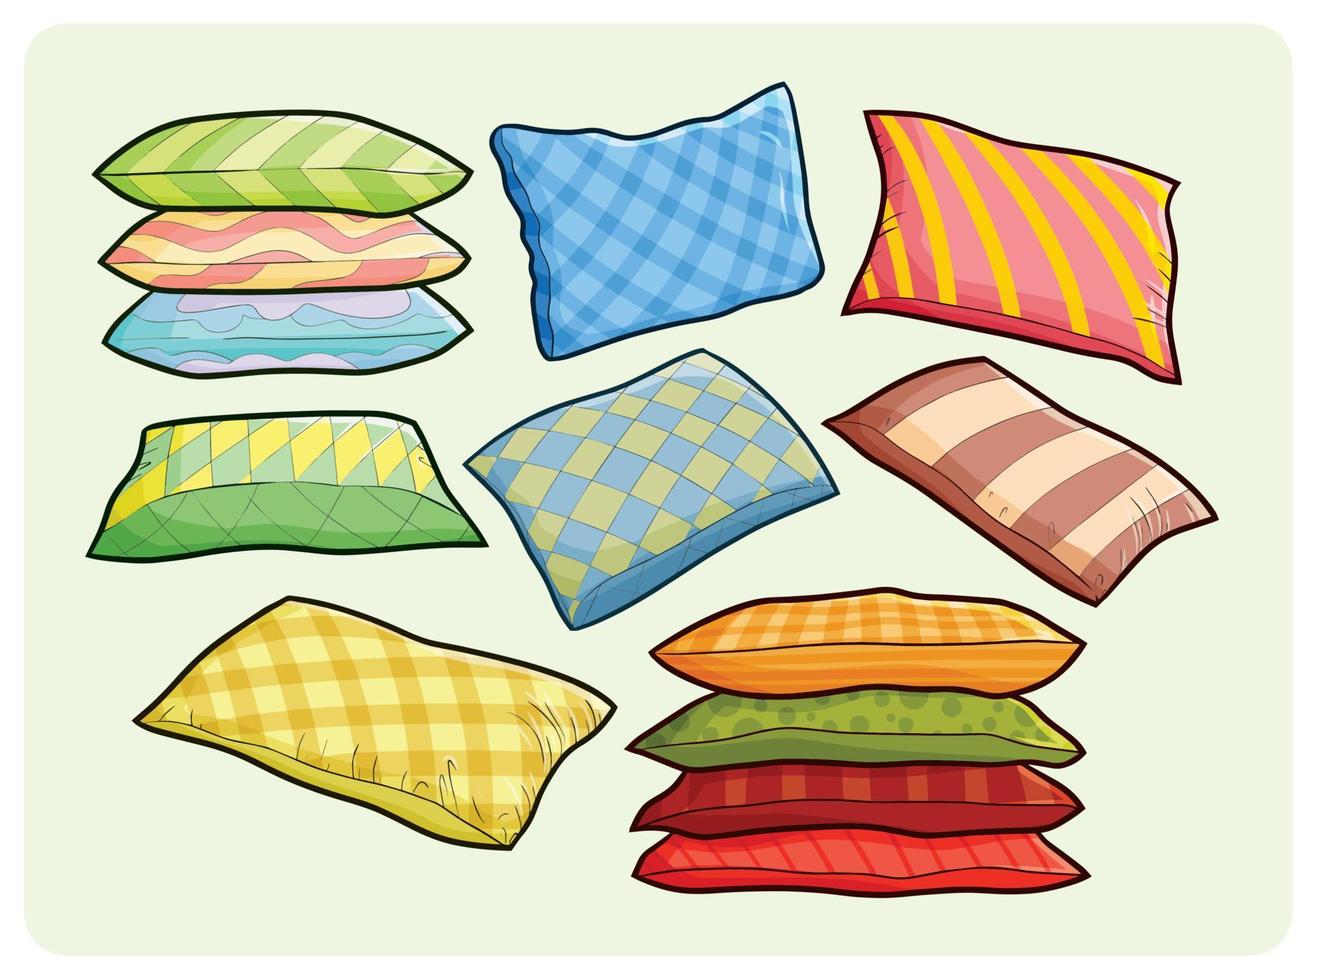 coleção de travesseiros grandes coloridos engraçados em estilo de desenho animado simples vetor